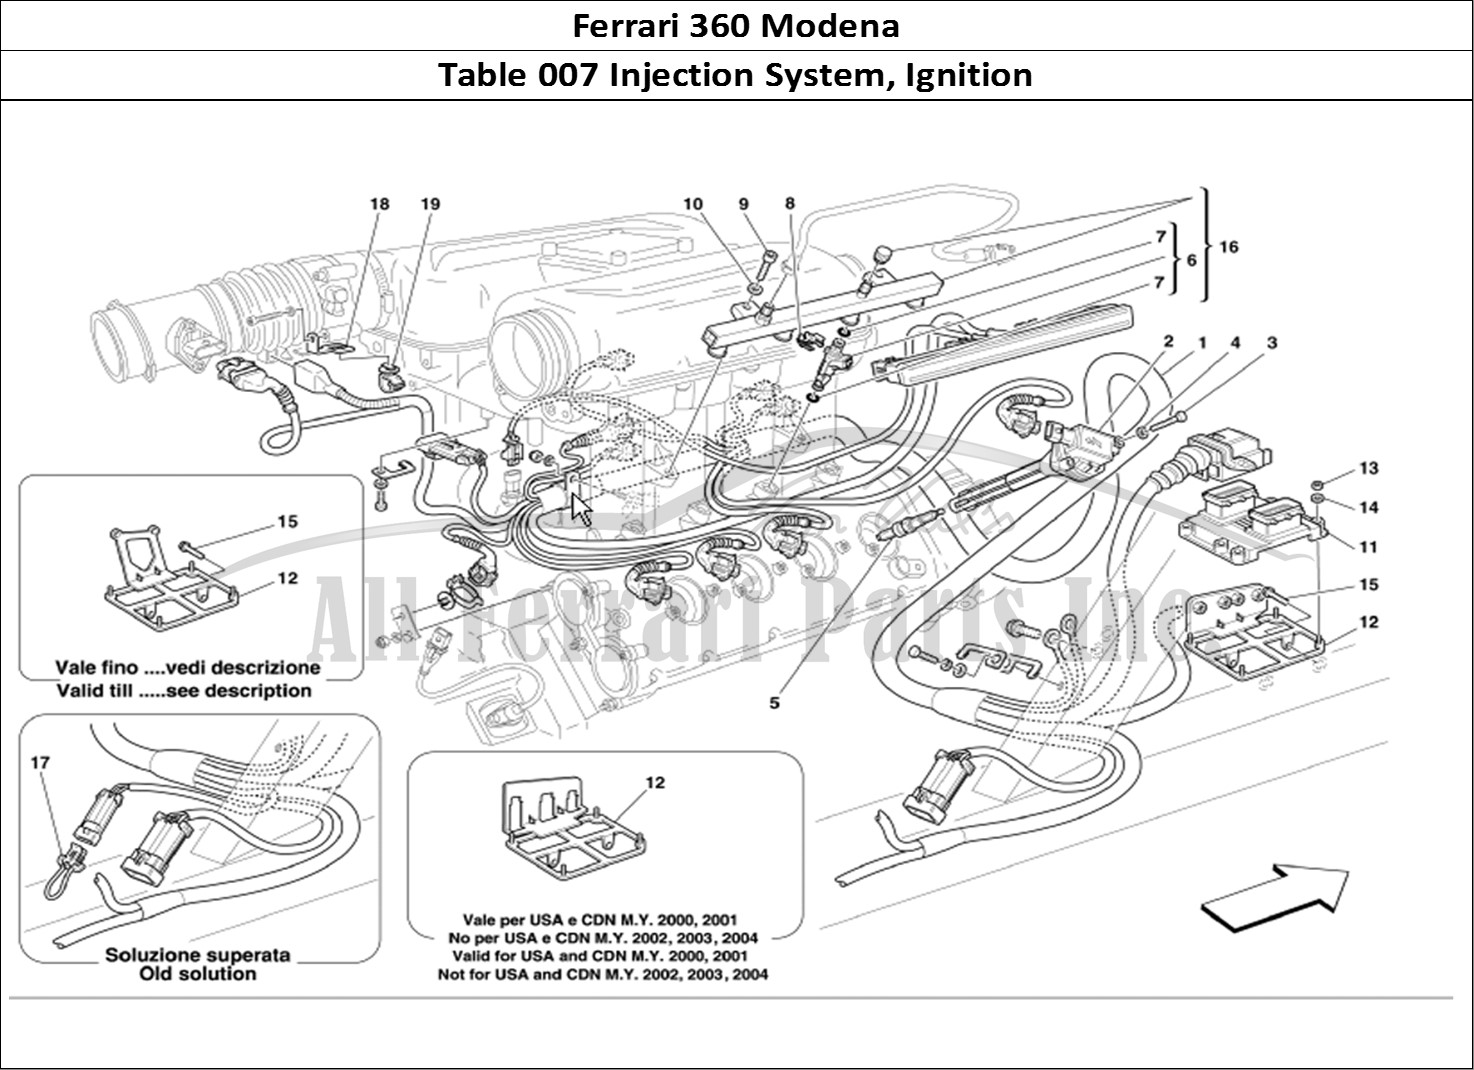 Ferrari Parts Ferrari 360 Modena Page 007 Injection Device Ignition